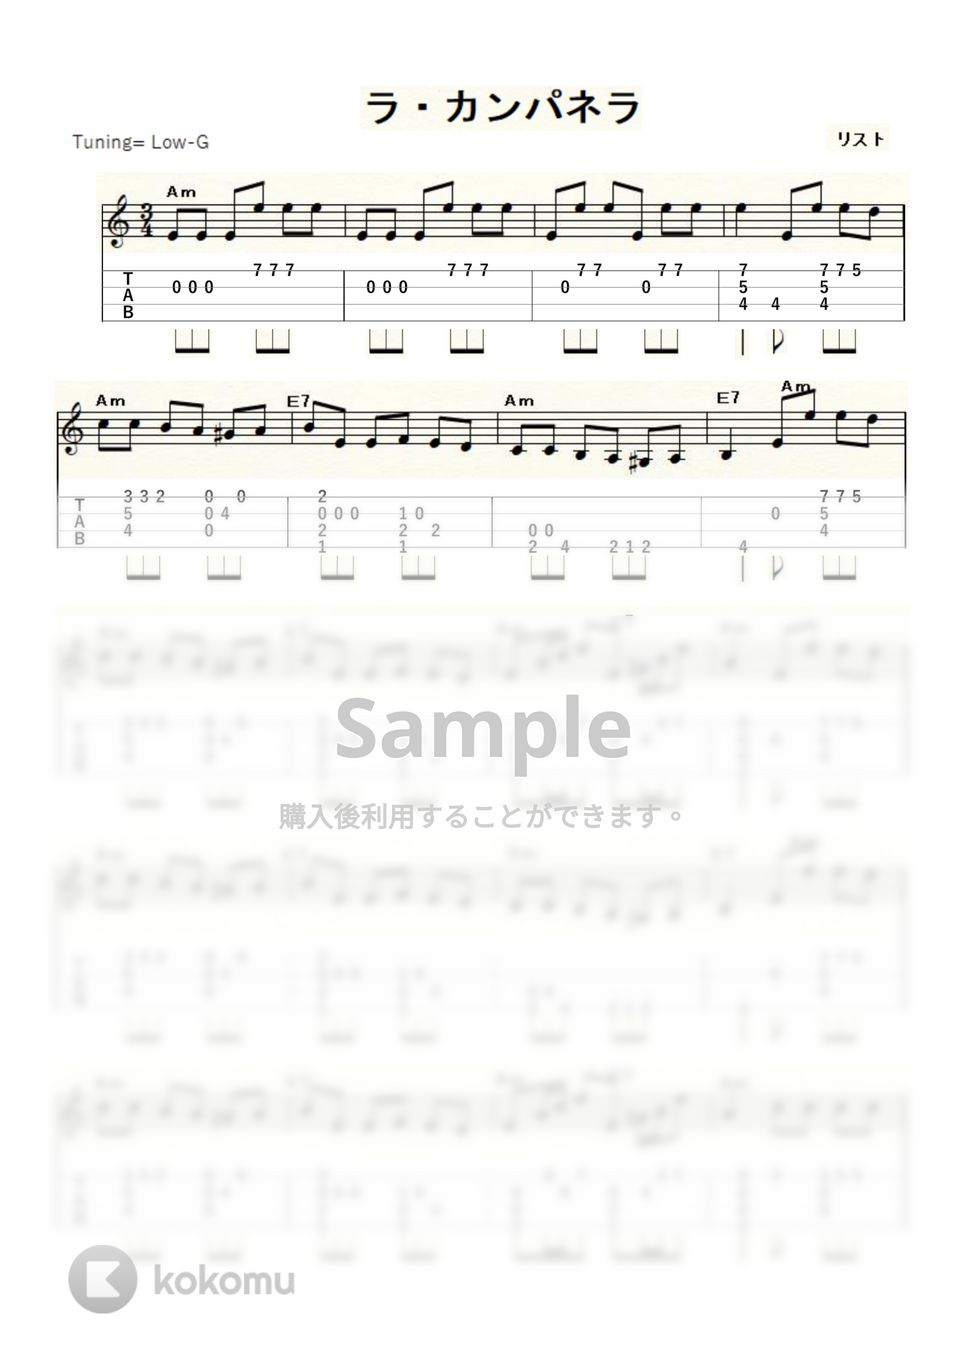 リスト - ラ・カンパネラ (ｳｸﾚﾚｿﾛ / Low-G / 中～上級) by ukulelepapa